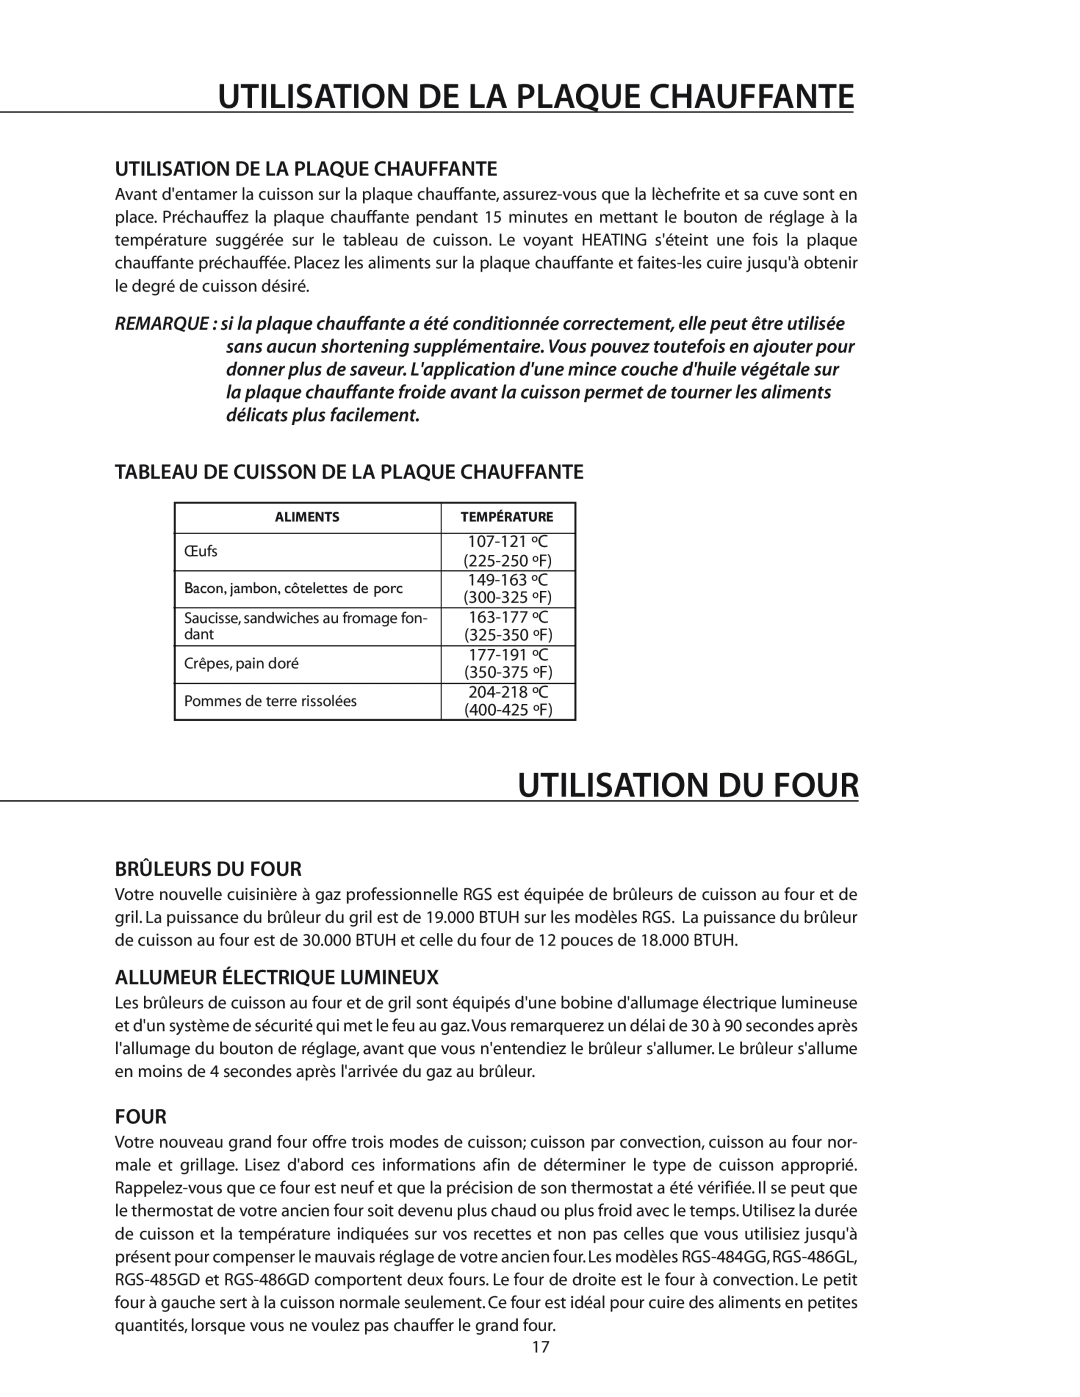 DCS RGS-364GL manual Utilisation Du Four, Utilisation De La Plaque Chauffante, Tableau De Cuisson De La Plaque Chauffante 